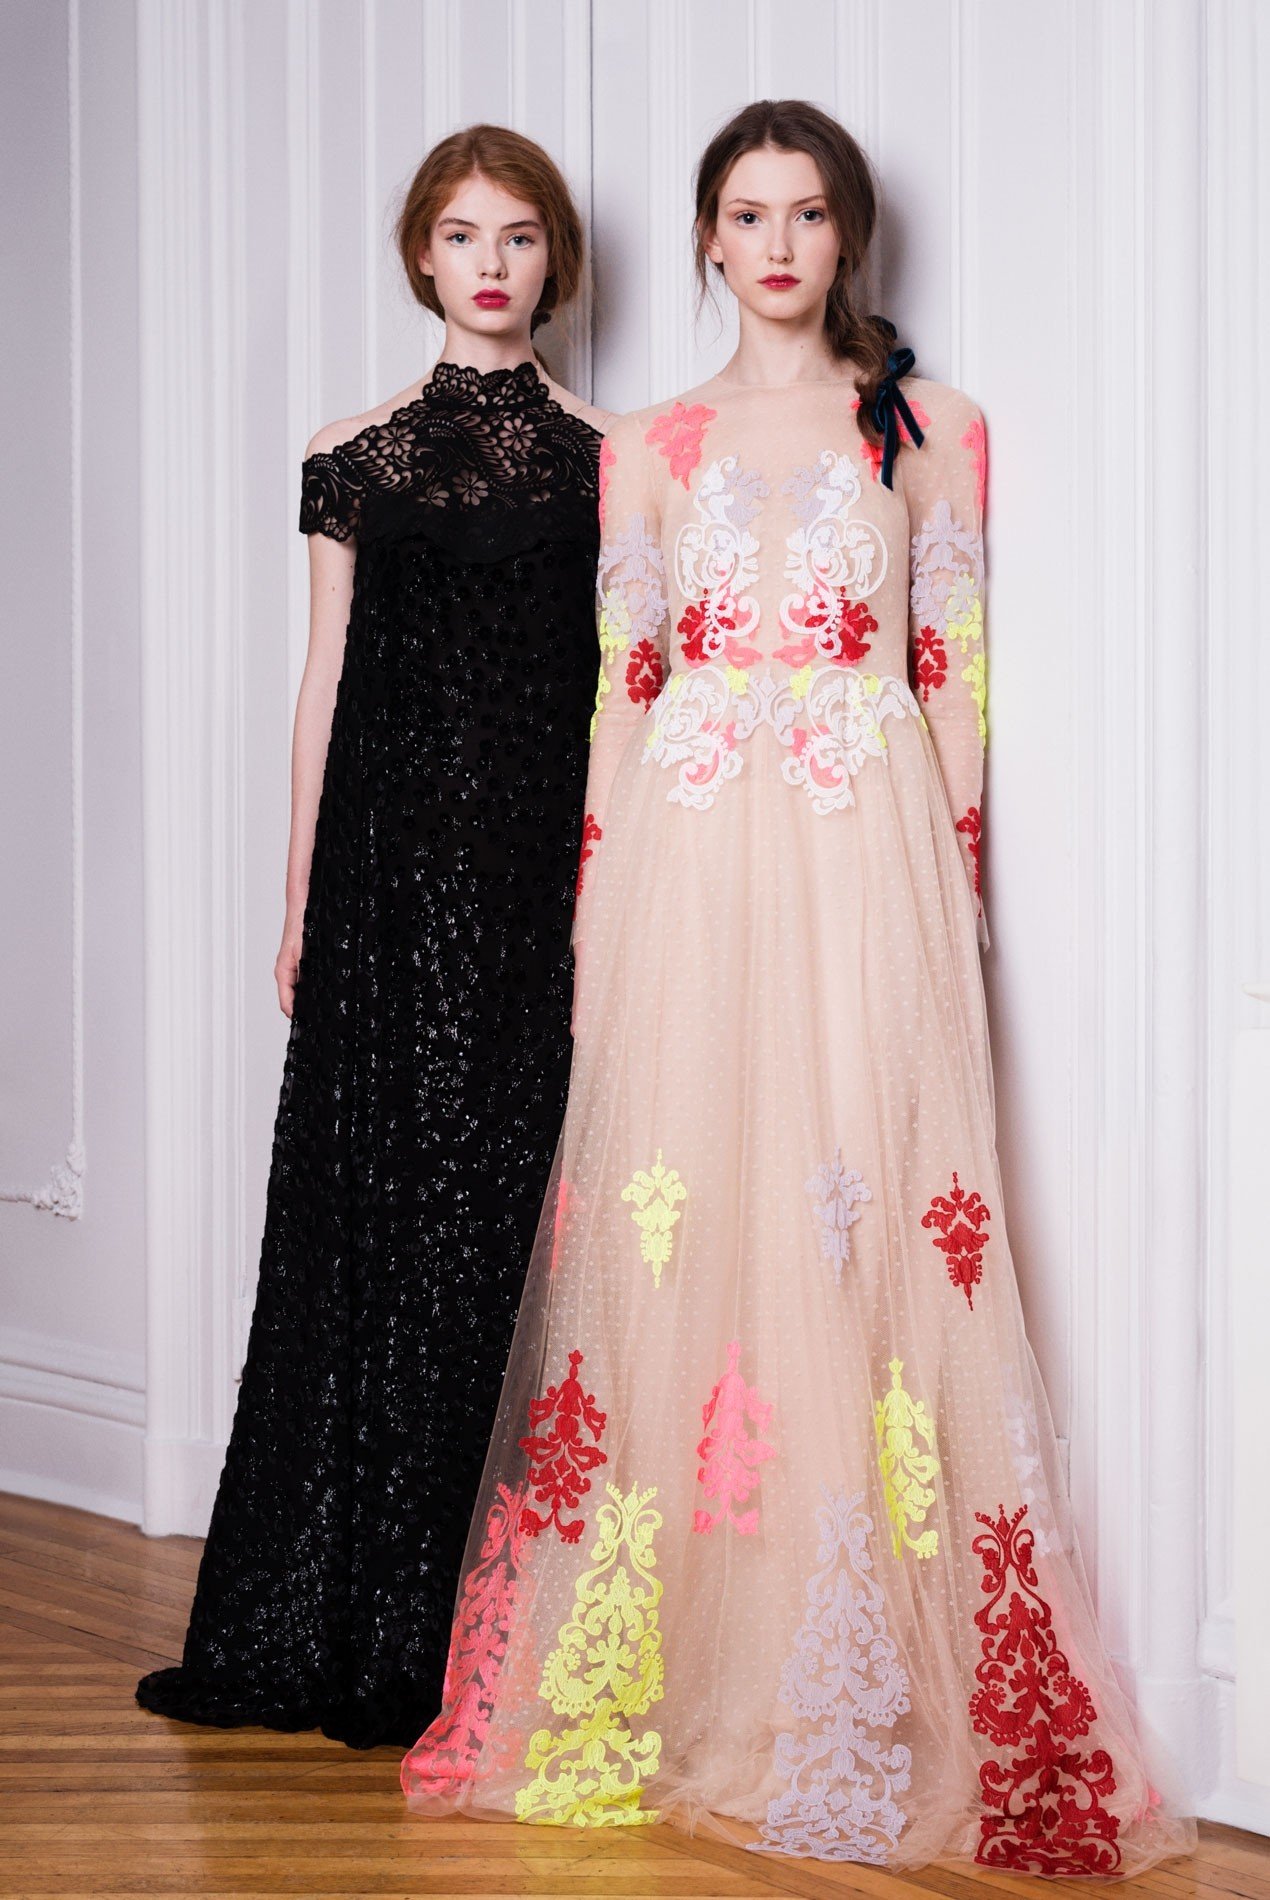 Left: Panne velvet gown with laser cut yoke | Right: Point d’esprit gown with hand appliqué lace